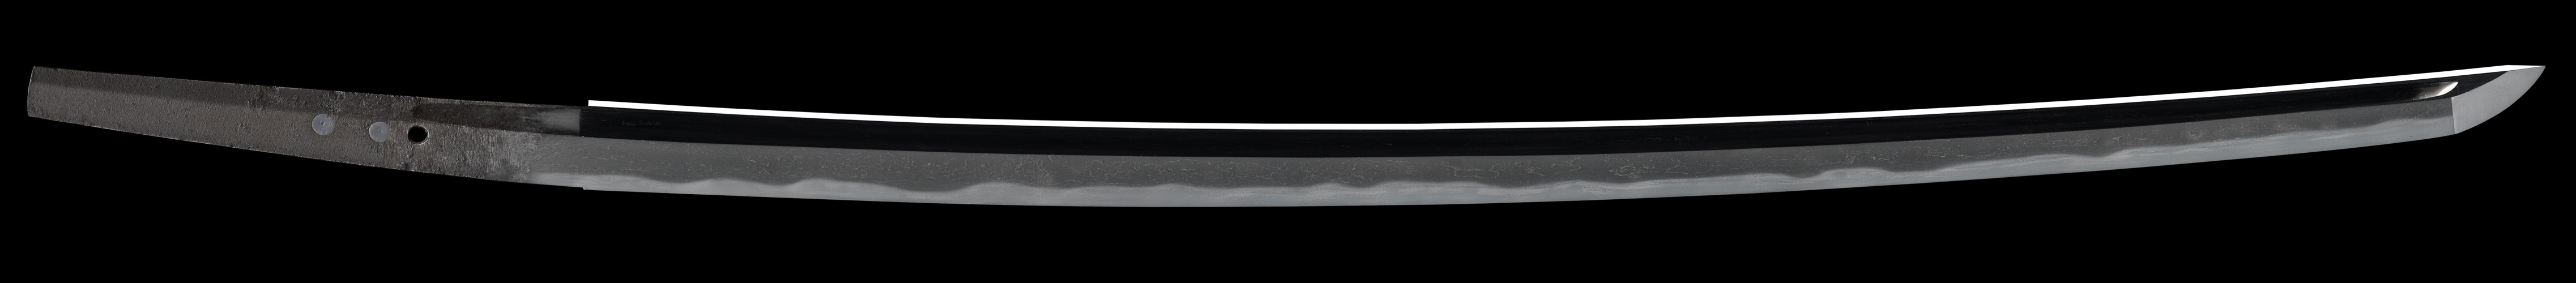 Tametsugu sword